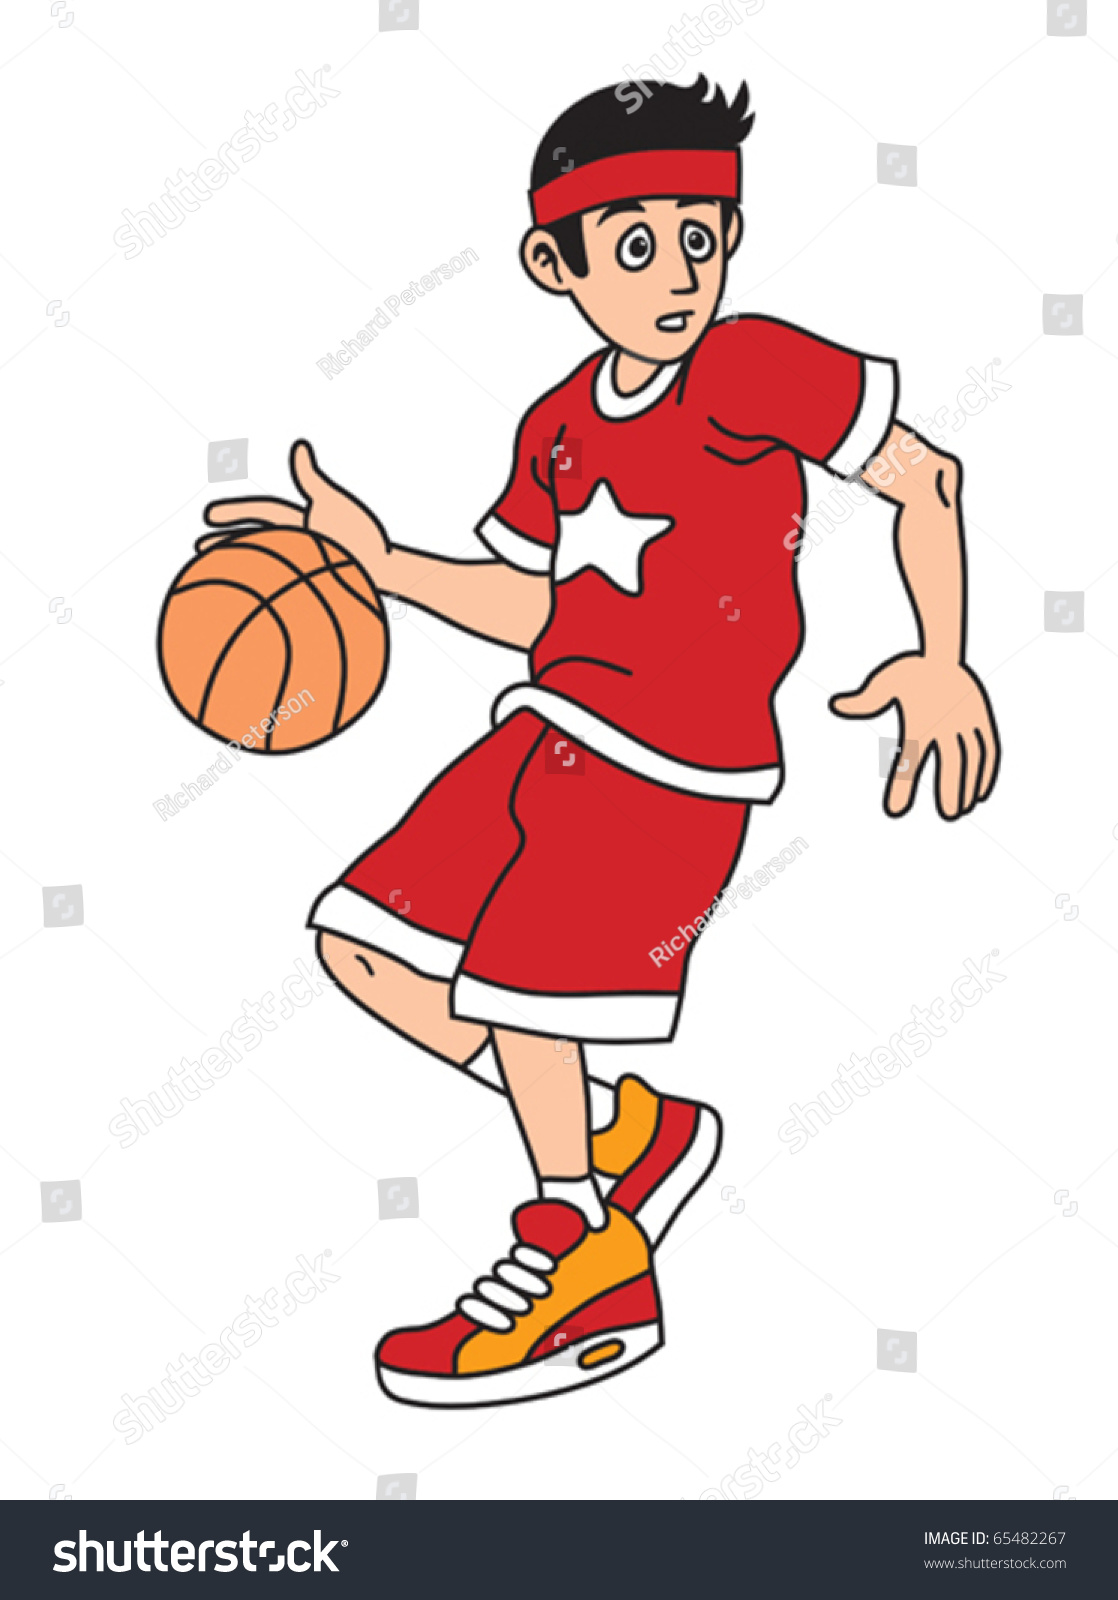 Рисунок мальчиков играющих в баскетбол.